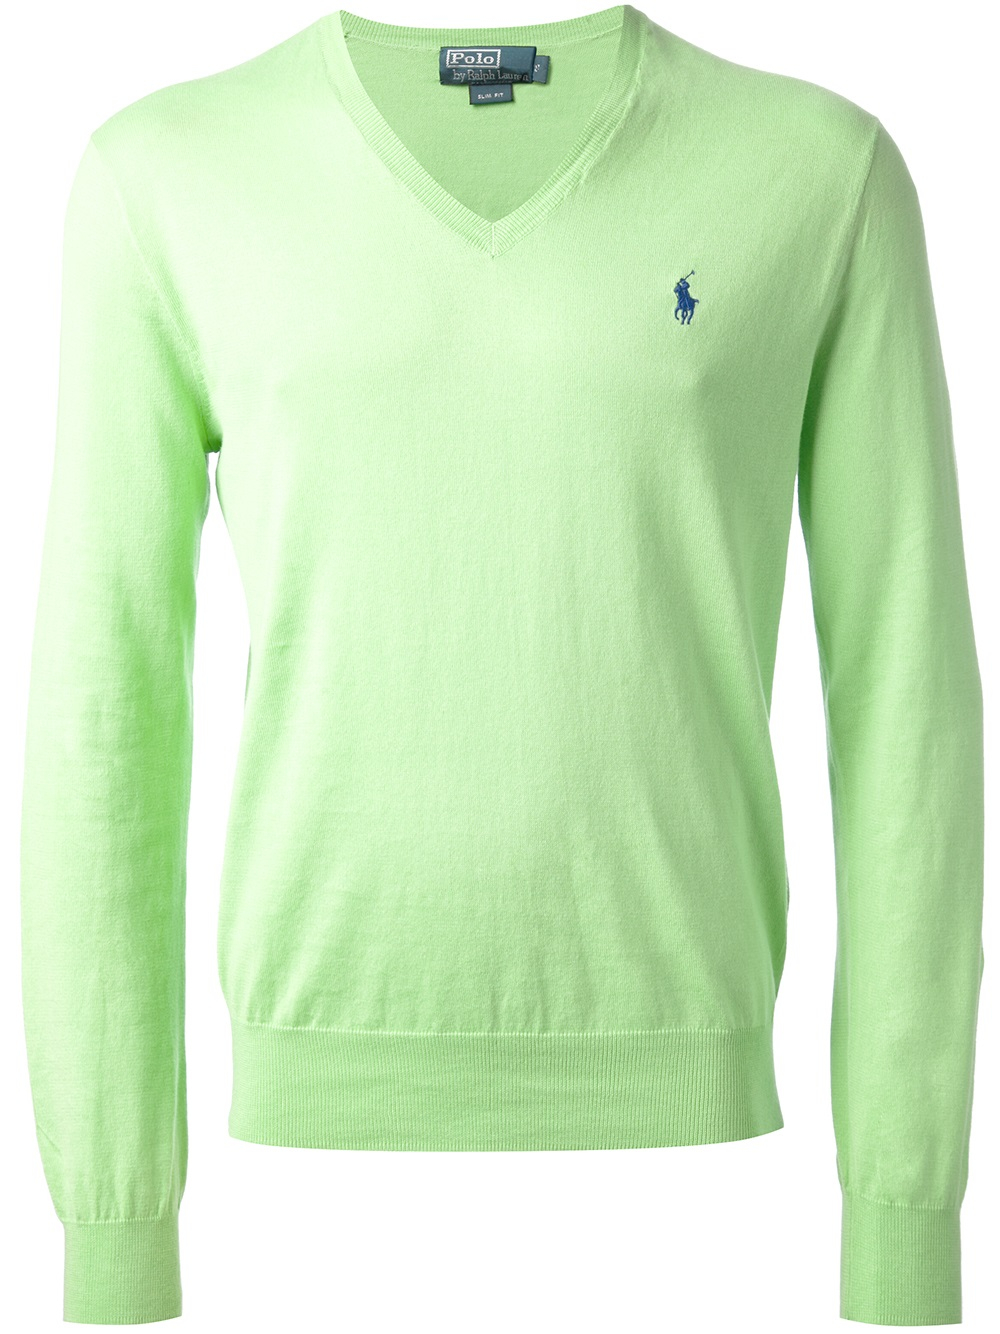 Lyst - Polo Ralph Lauren V-Neck Sweater in Green for Men